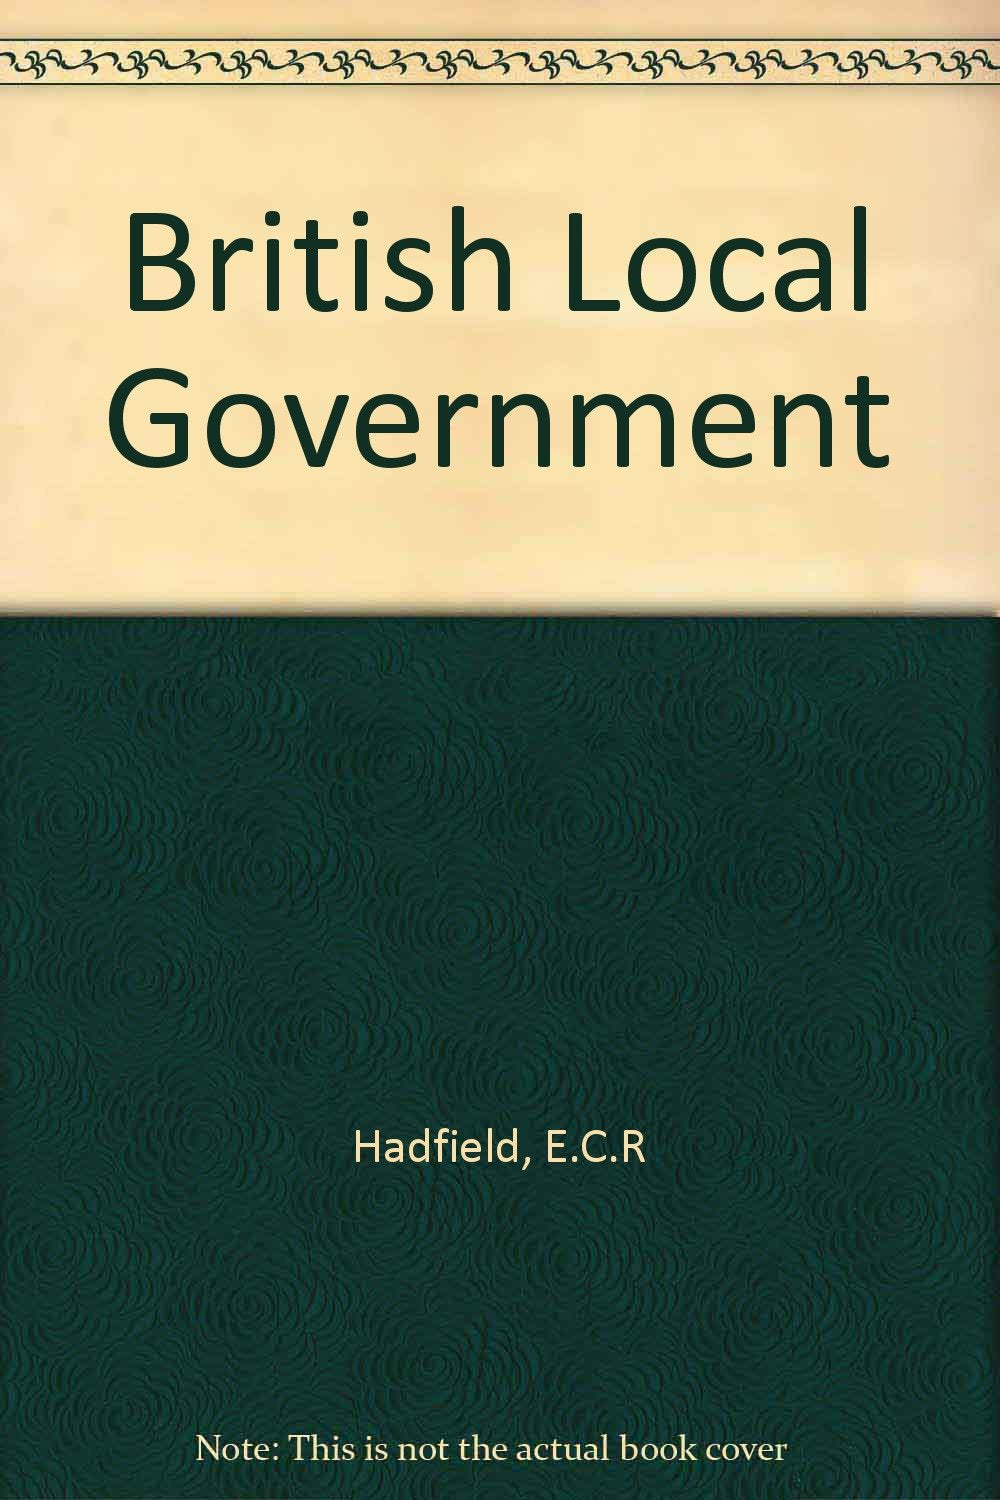 British Local Government [Hardcover] E.C.R.Hadfield & James E MacColl